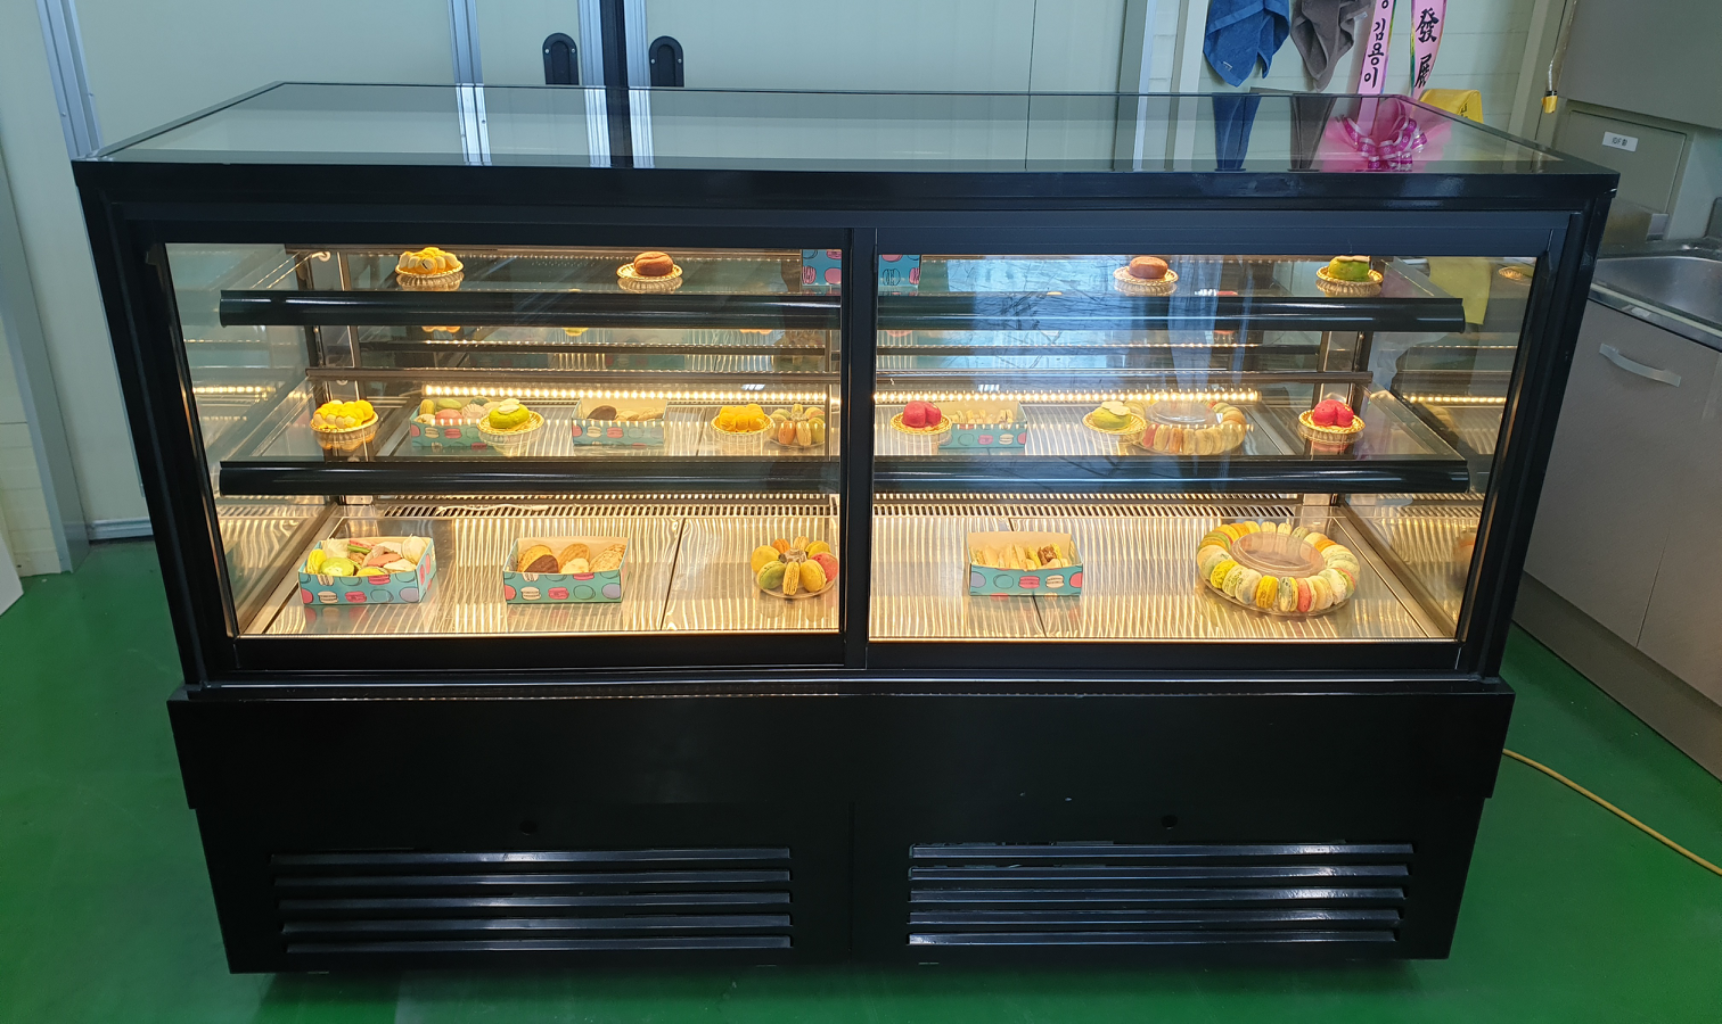 카페용 케익 베이커리 디저트 반찬 냉장 쇼케이스 앞문